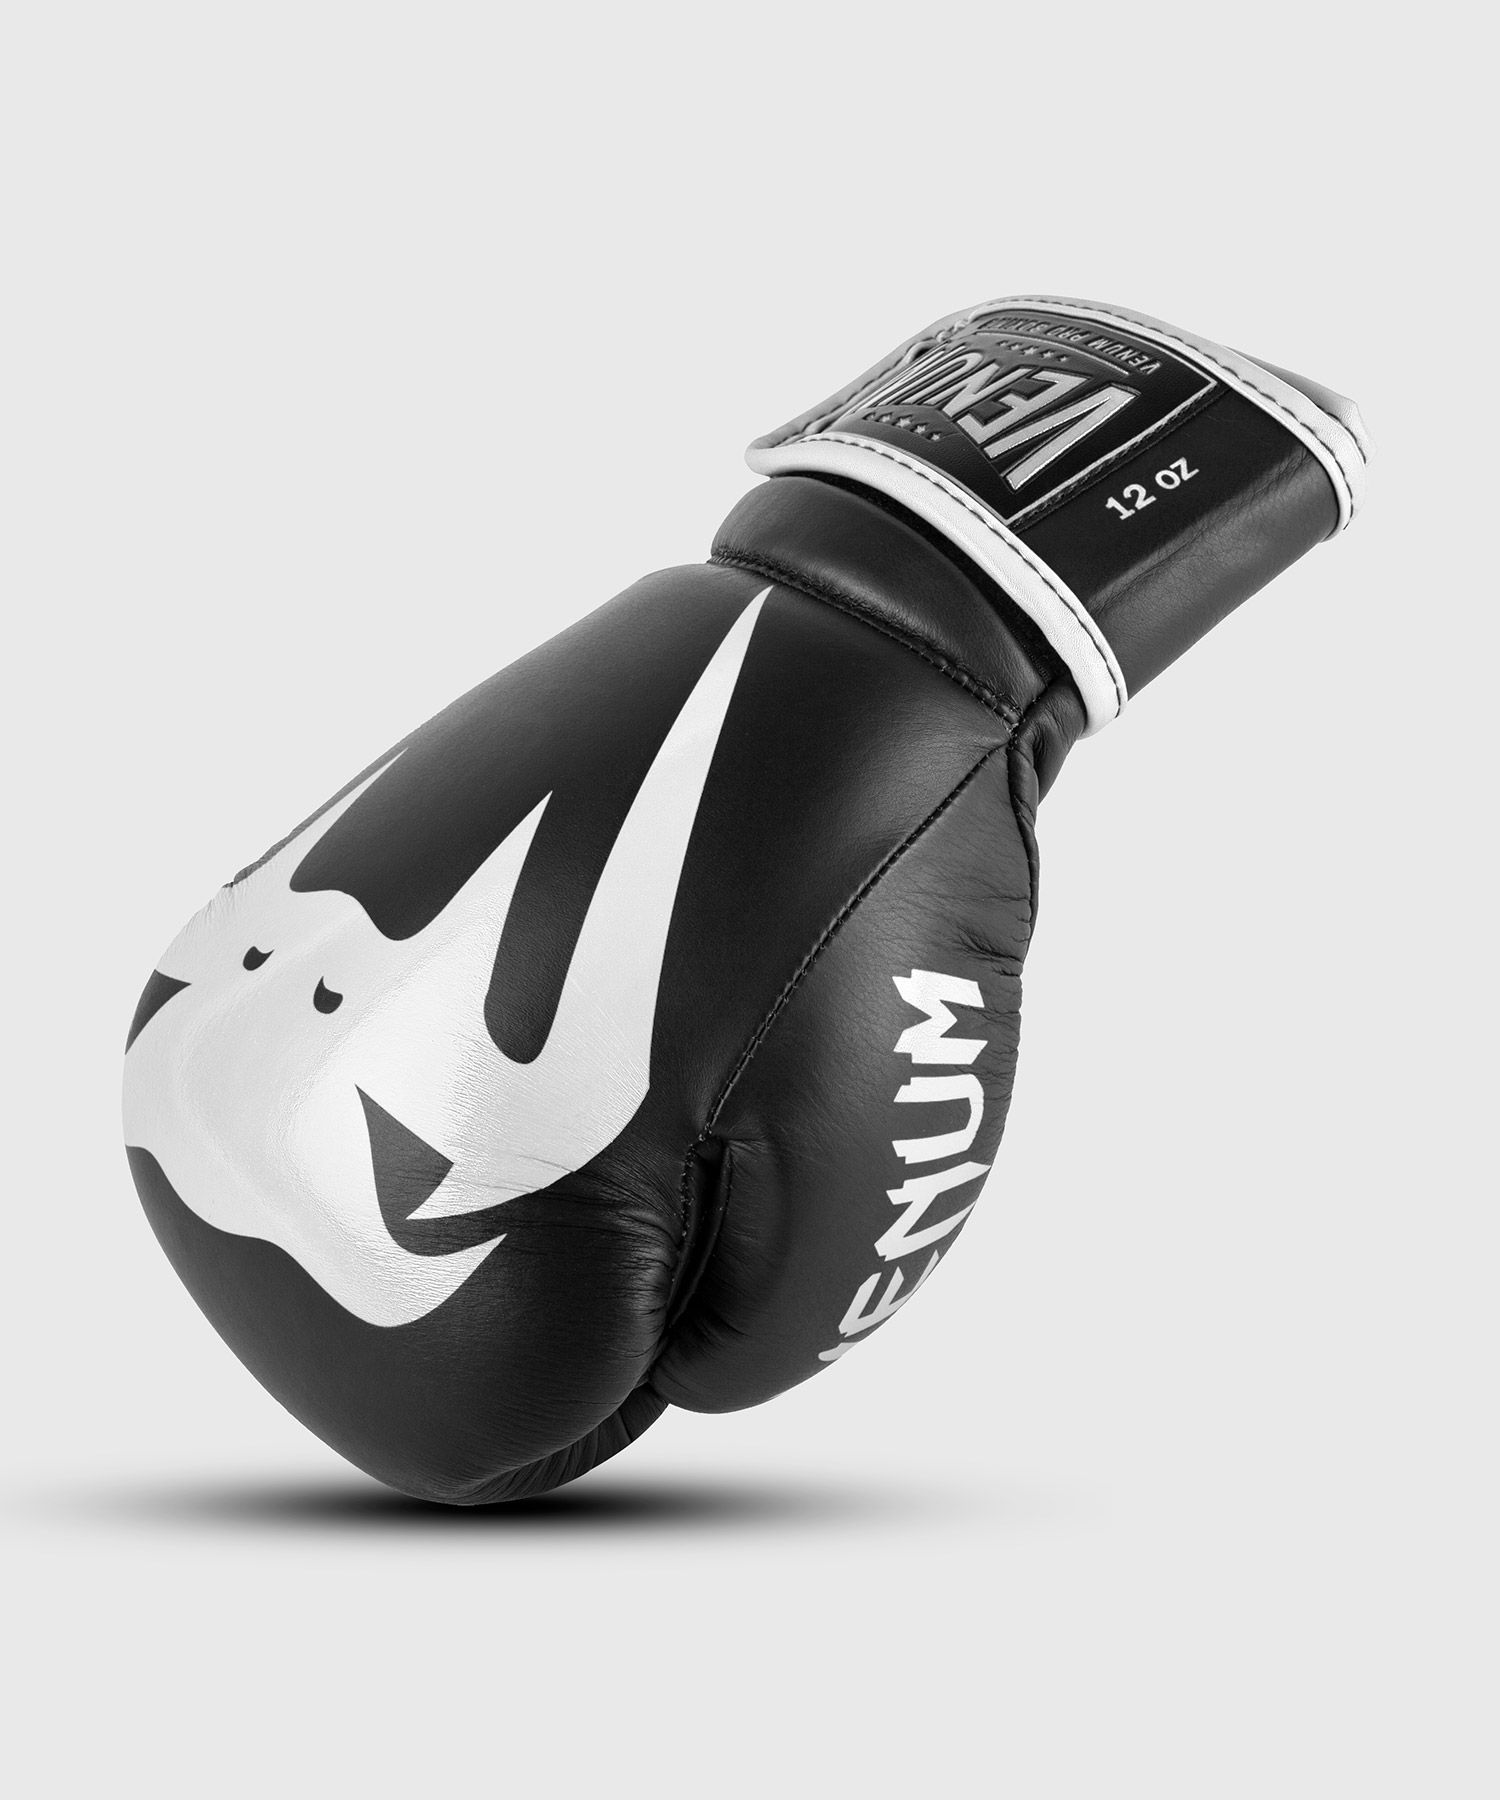 Venum Giant 2.0 professionelle Boxhandschuhe - Klettverschluss - Schwarz/Weiß